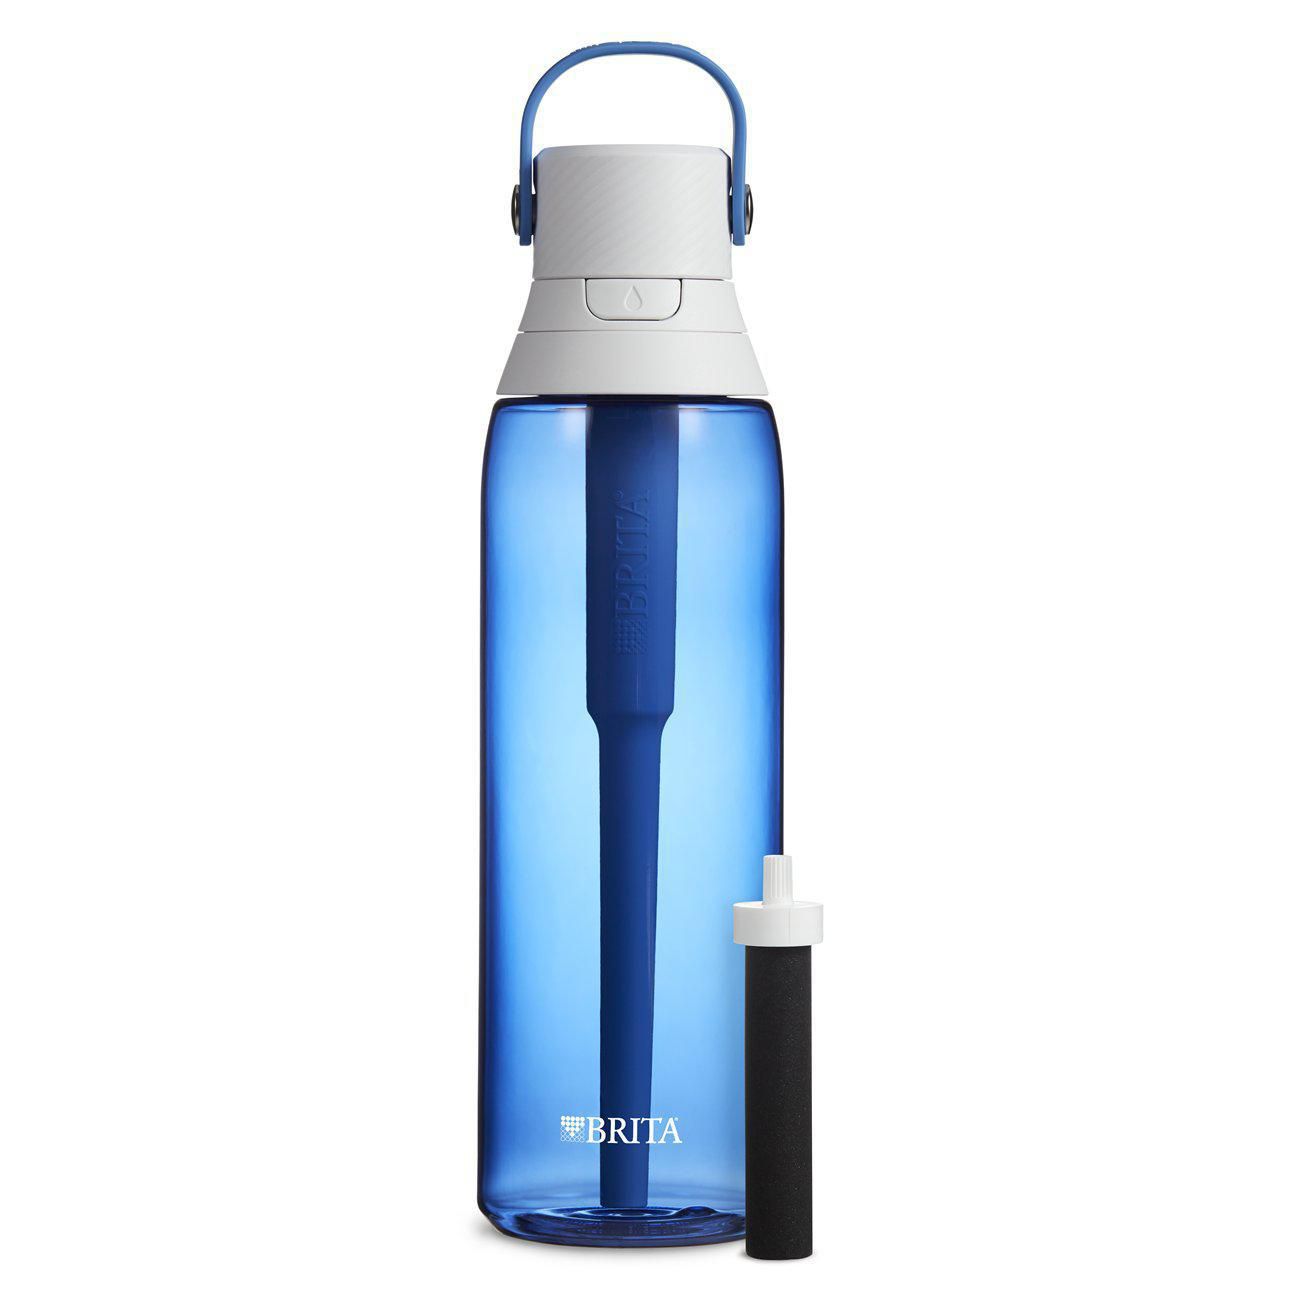 Système de filtration d'eau en bouteille Brita, 768 ml 